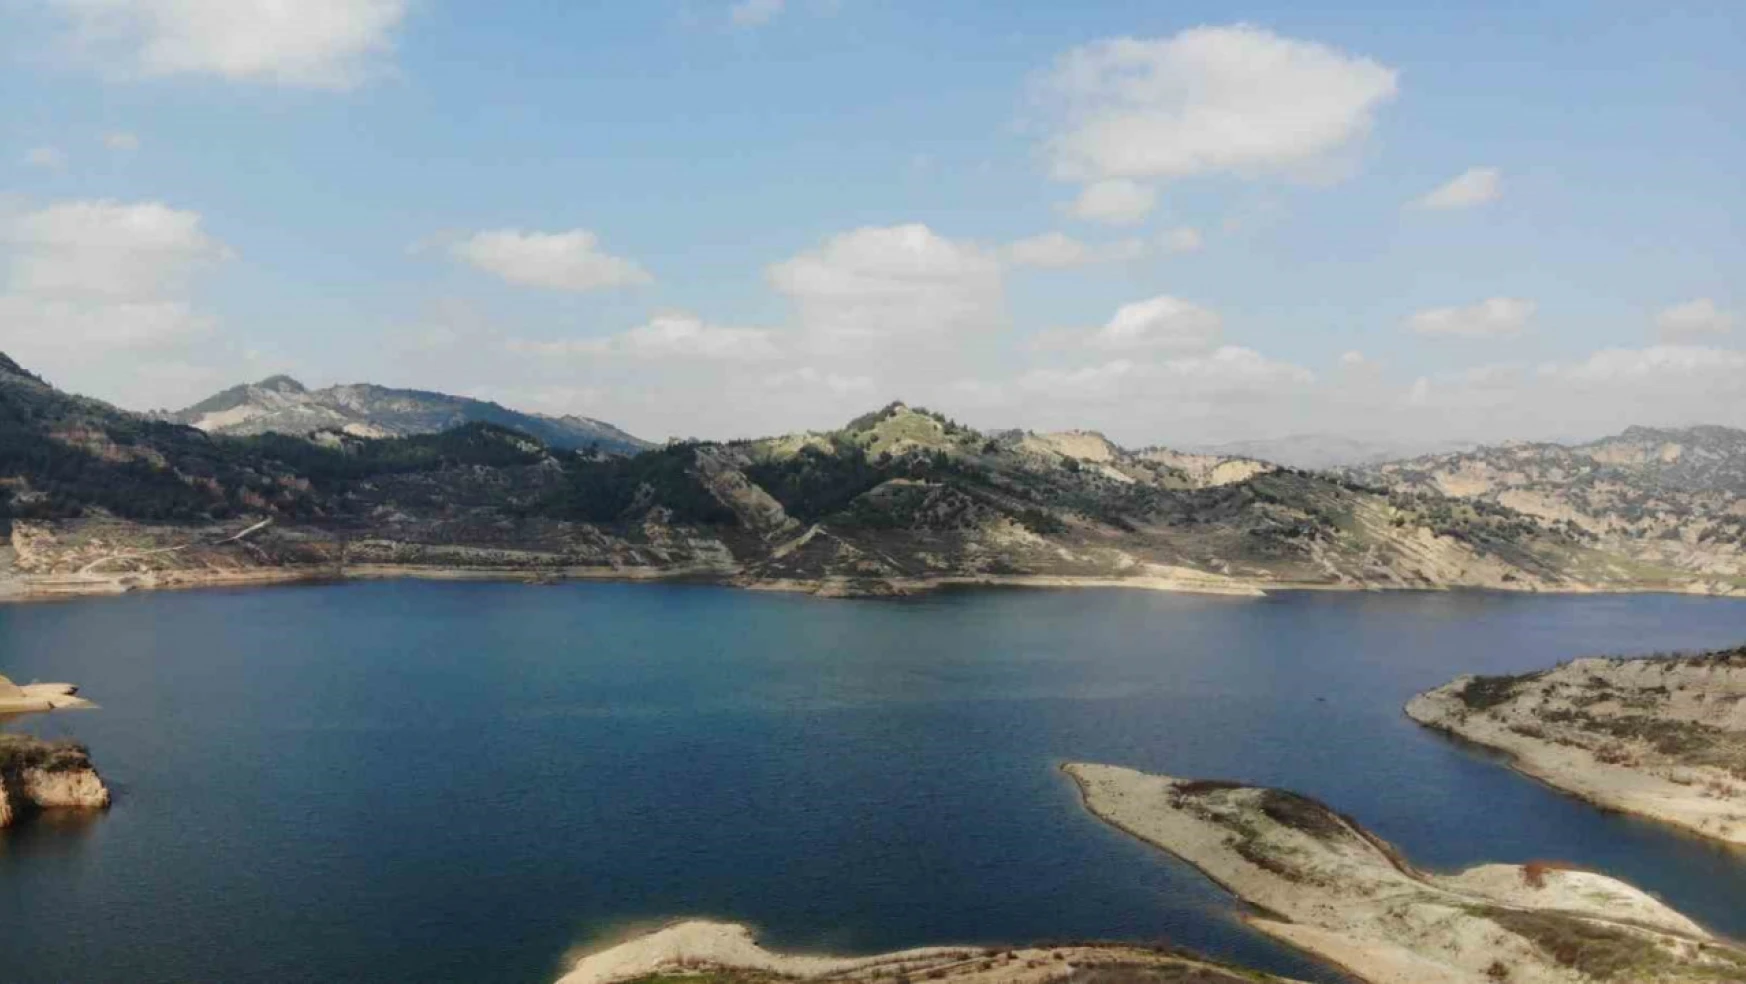 Aydın'da barajların doluluk seviyeleri belli oldu